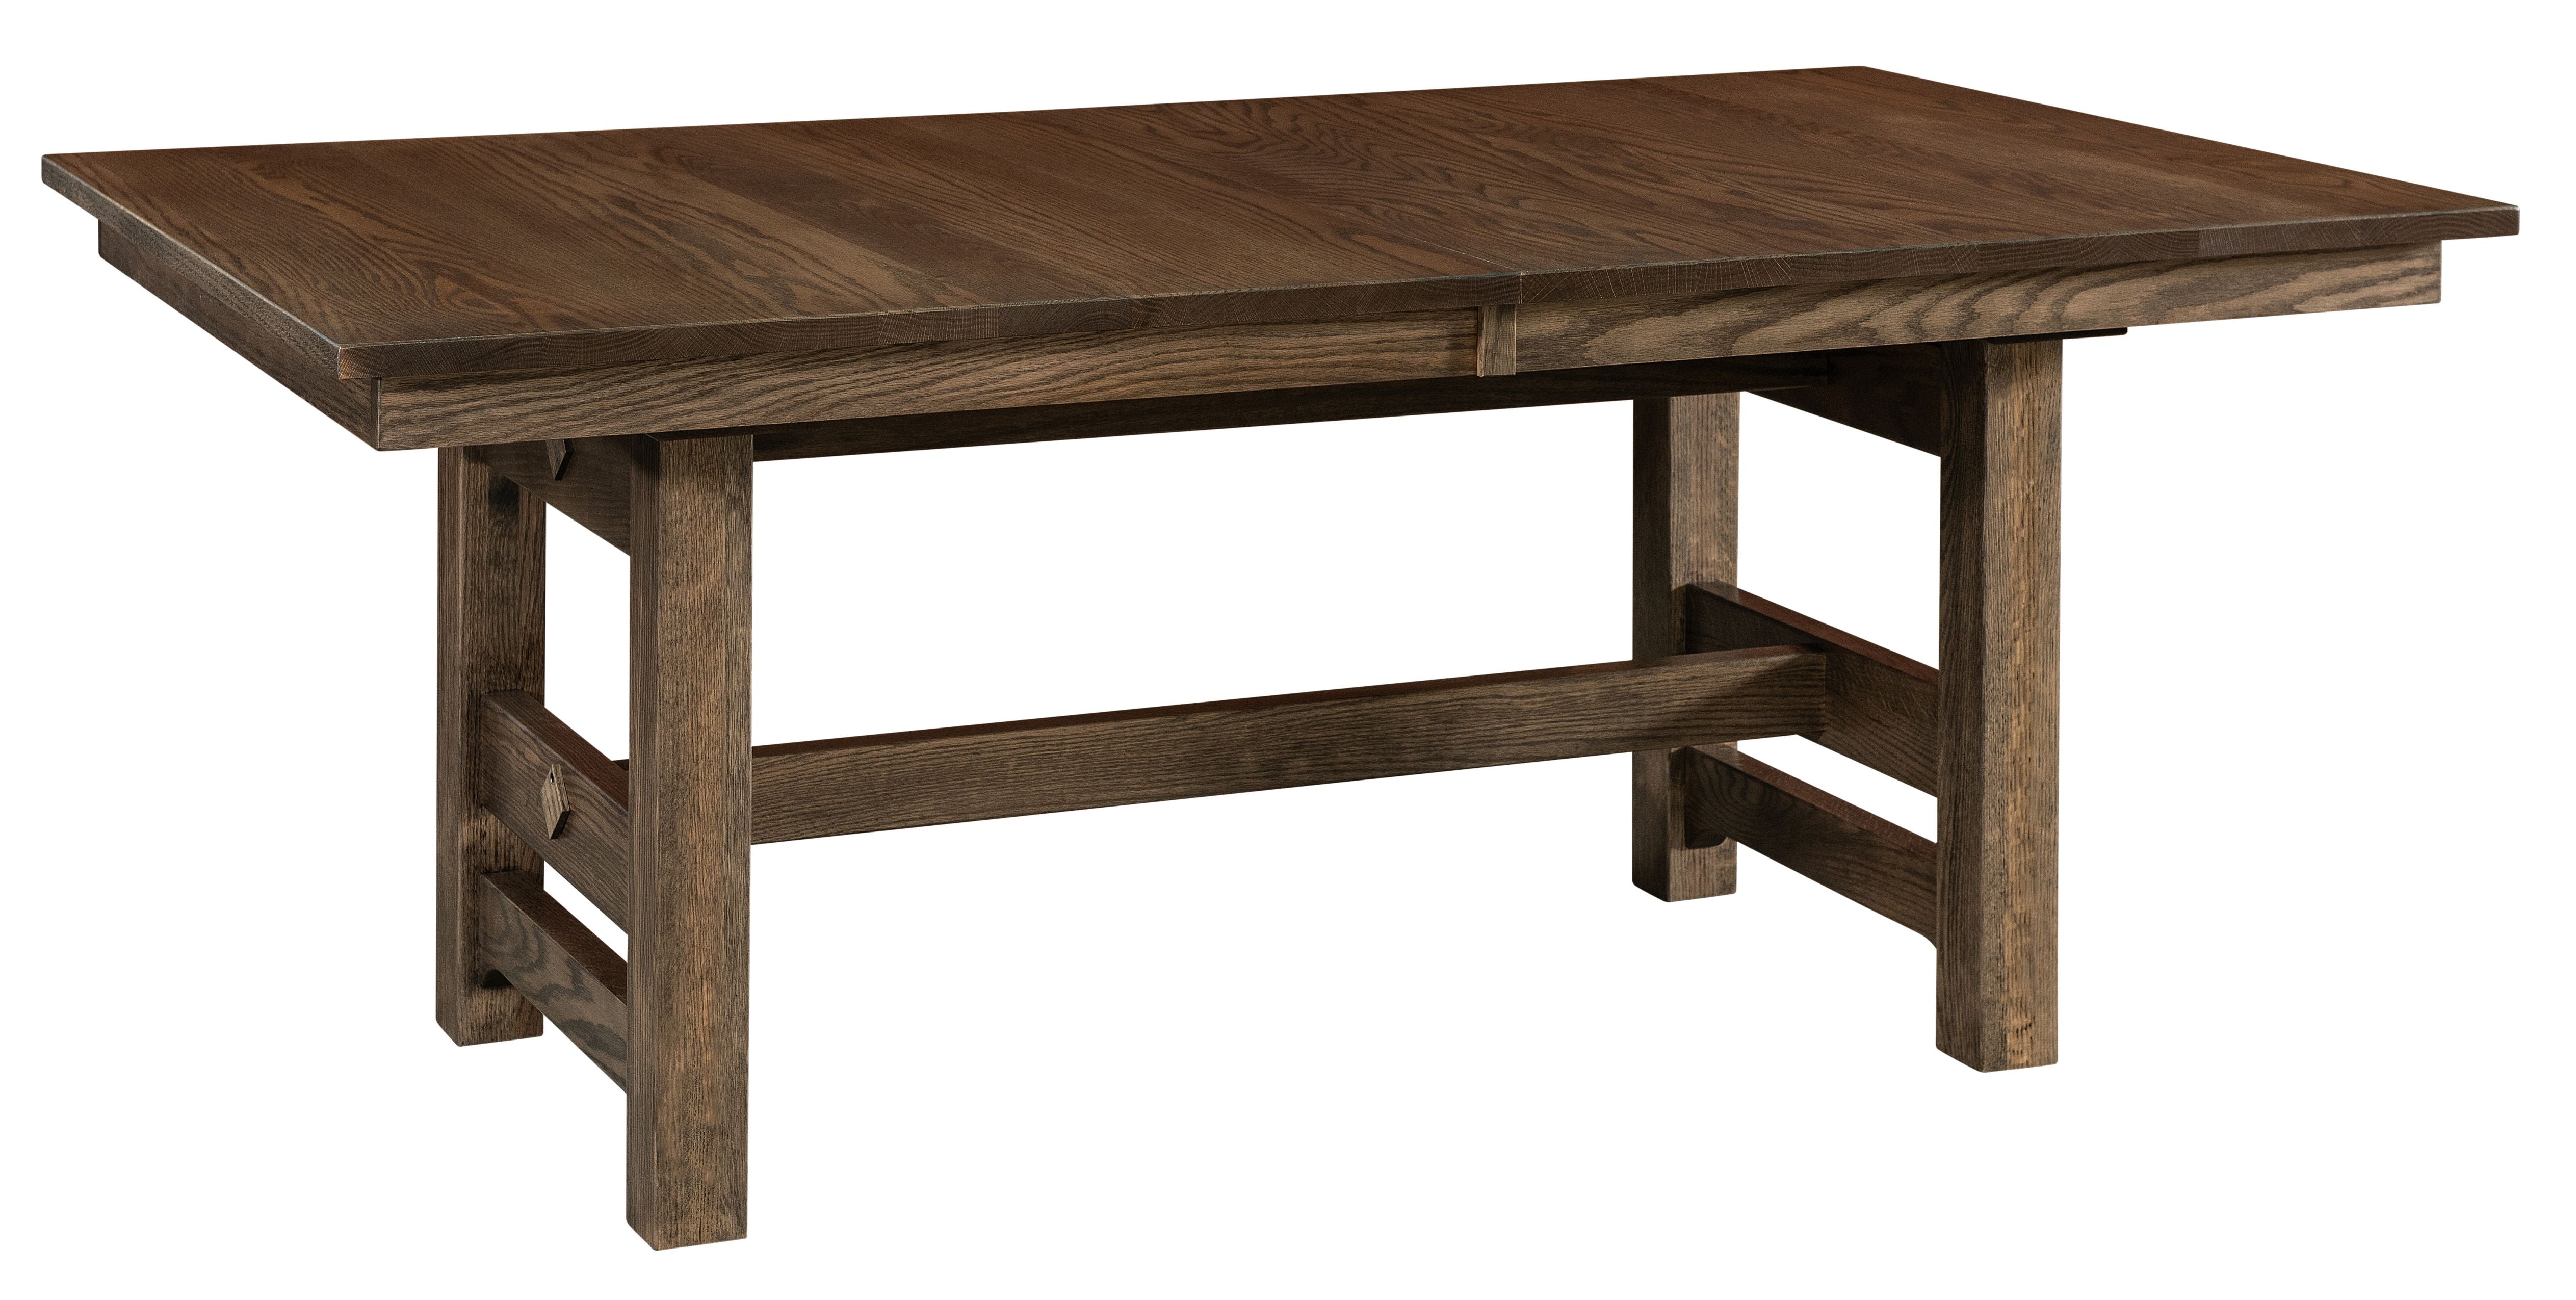 Amish Glenwood Trestle Table